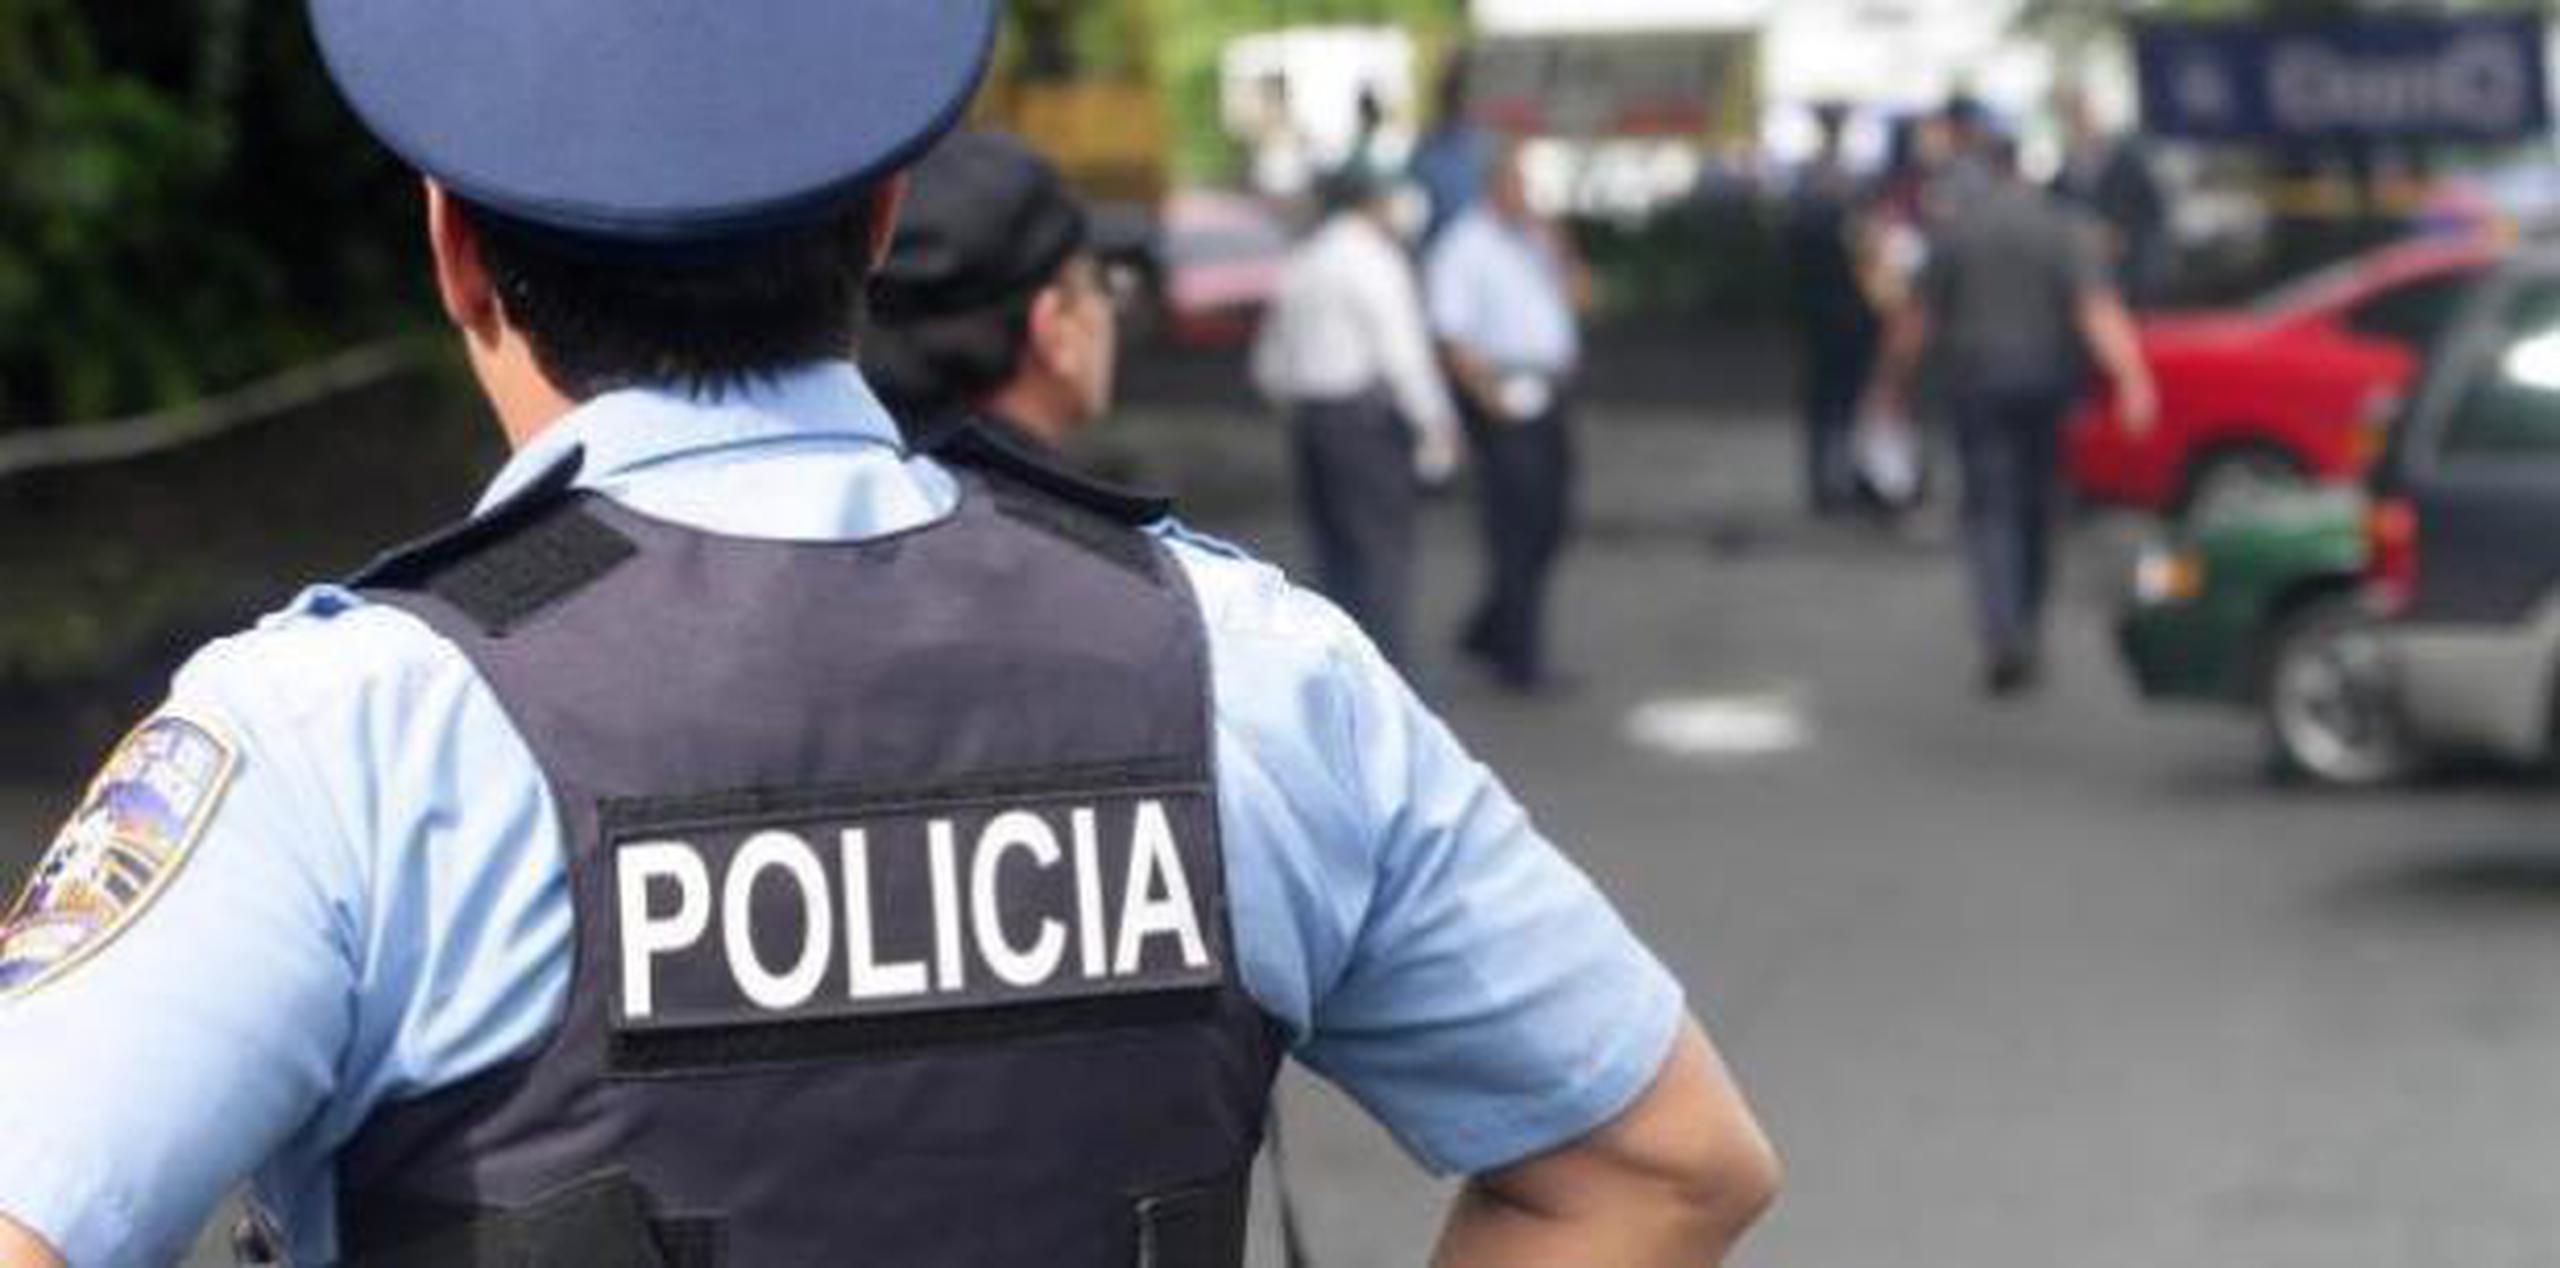 Este año las agresiones agravadas han aumentado en un 4.5% en el área policíaca de San Juan.  (archivo)

